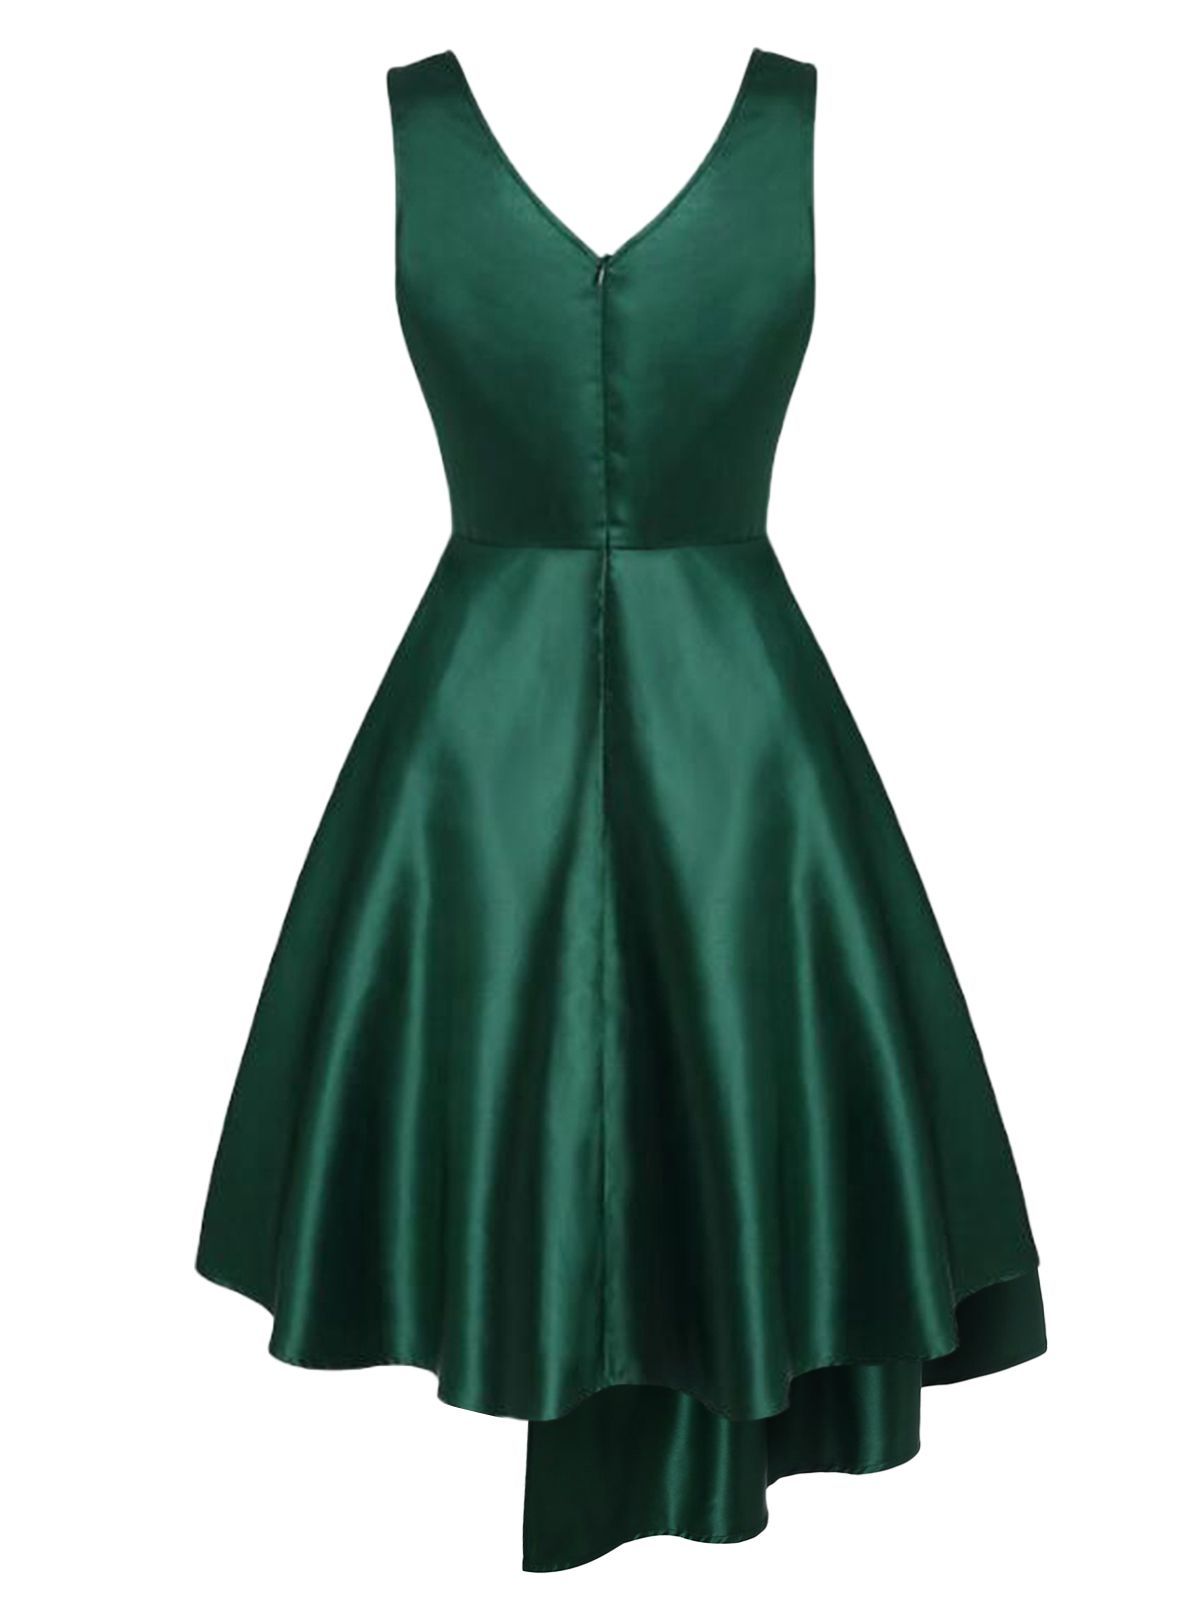 Robe Swing Hi-Lo vert foncé des années 1950